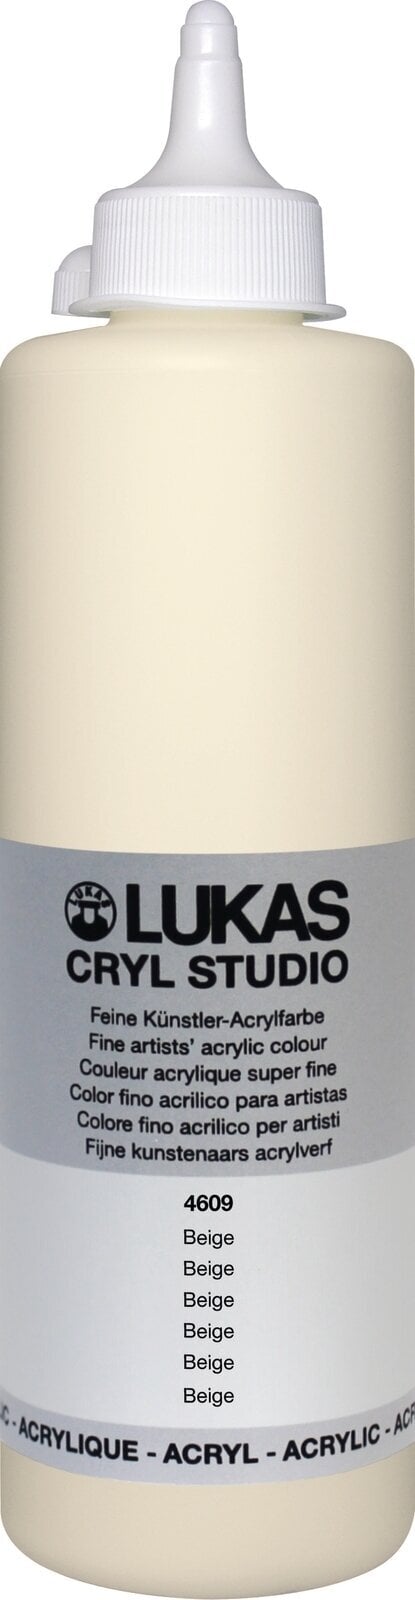 Tinta acrílica Lukas Cryl Studio Tinta acrílica 500 ml Beige